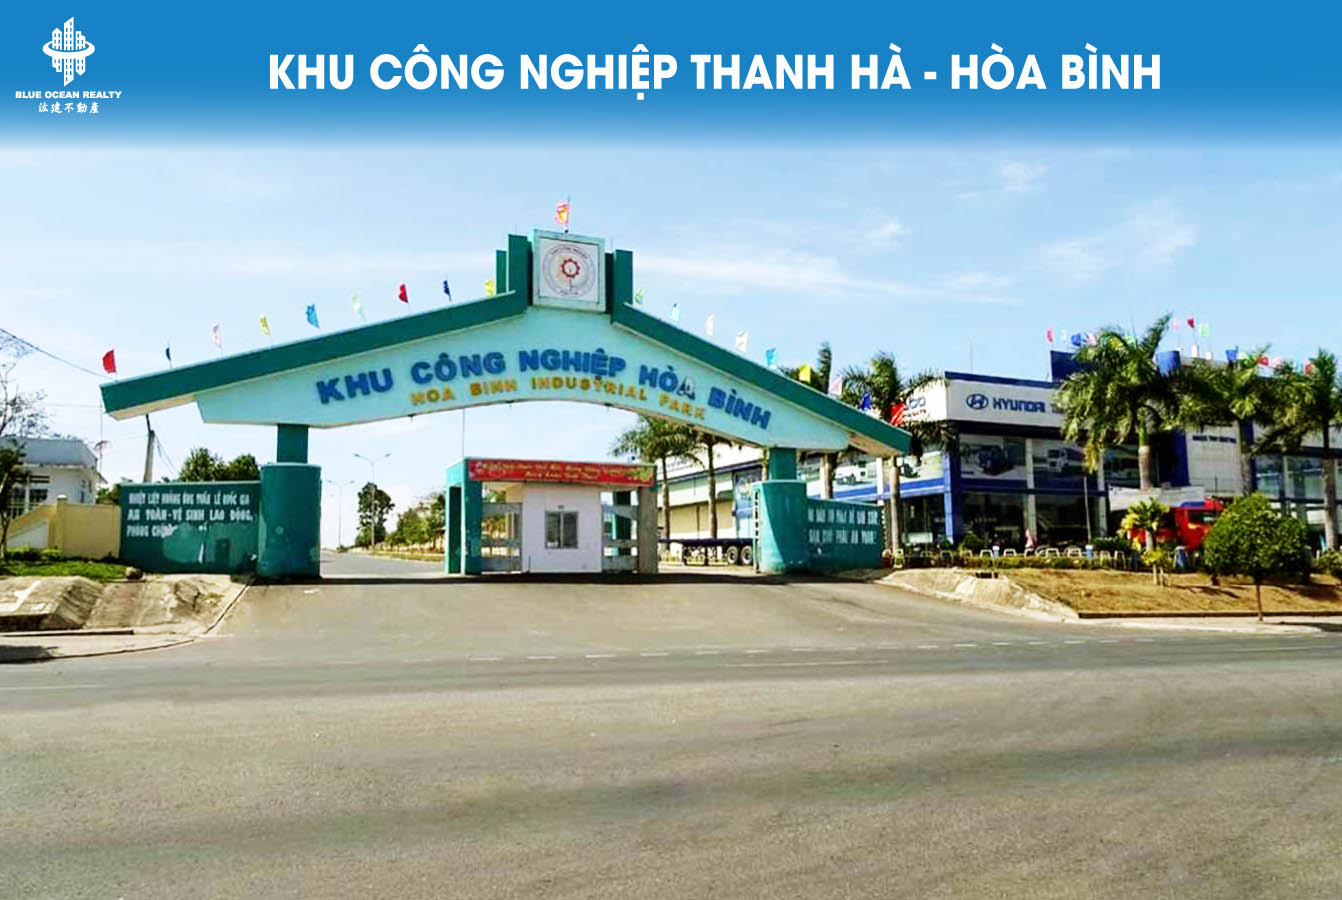 Khu công nghiệp (KCN) Thanh Hà - Hòa Bình